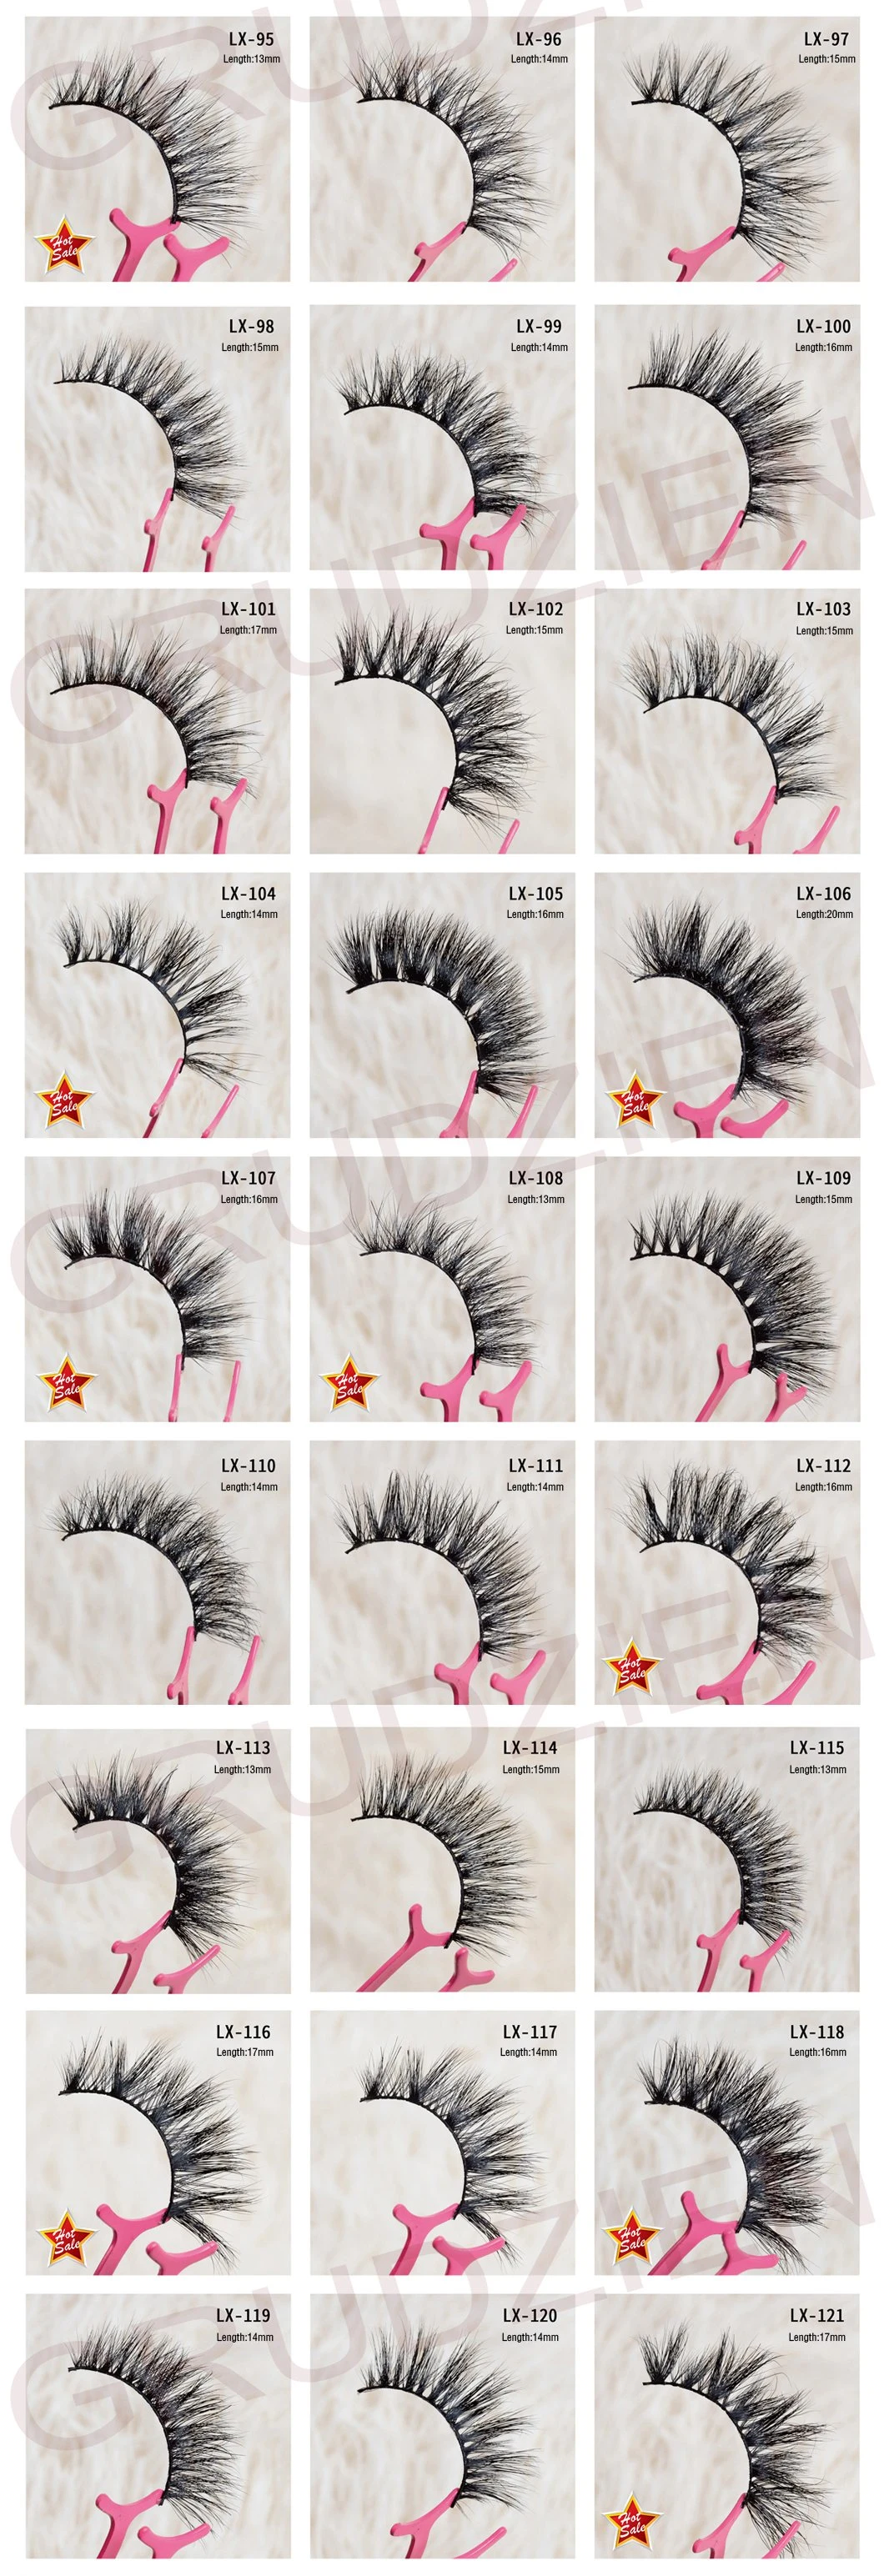 100% Natural Material Hand-Made Mink Eyelashes Private Label 3D Mink Lashes Mink Eyelashes Vendor